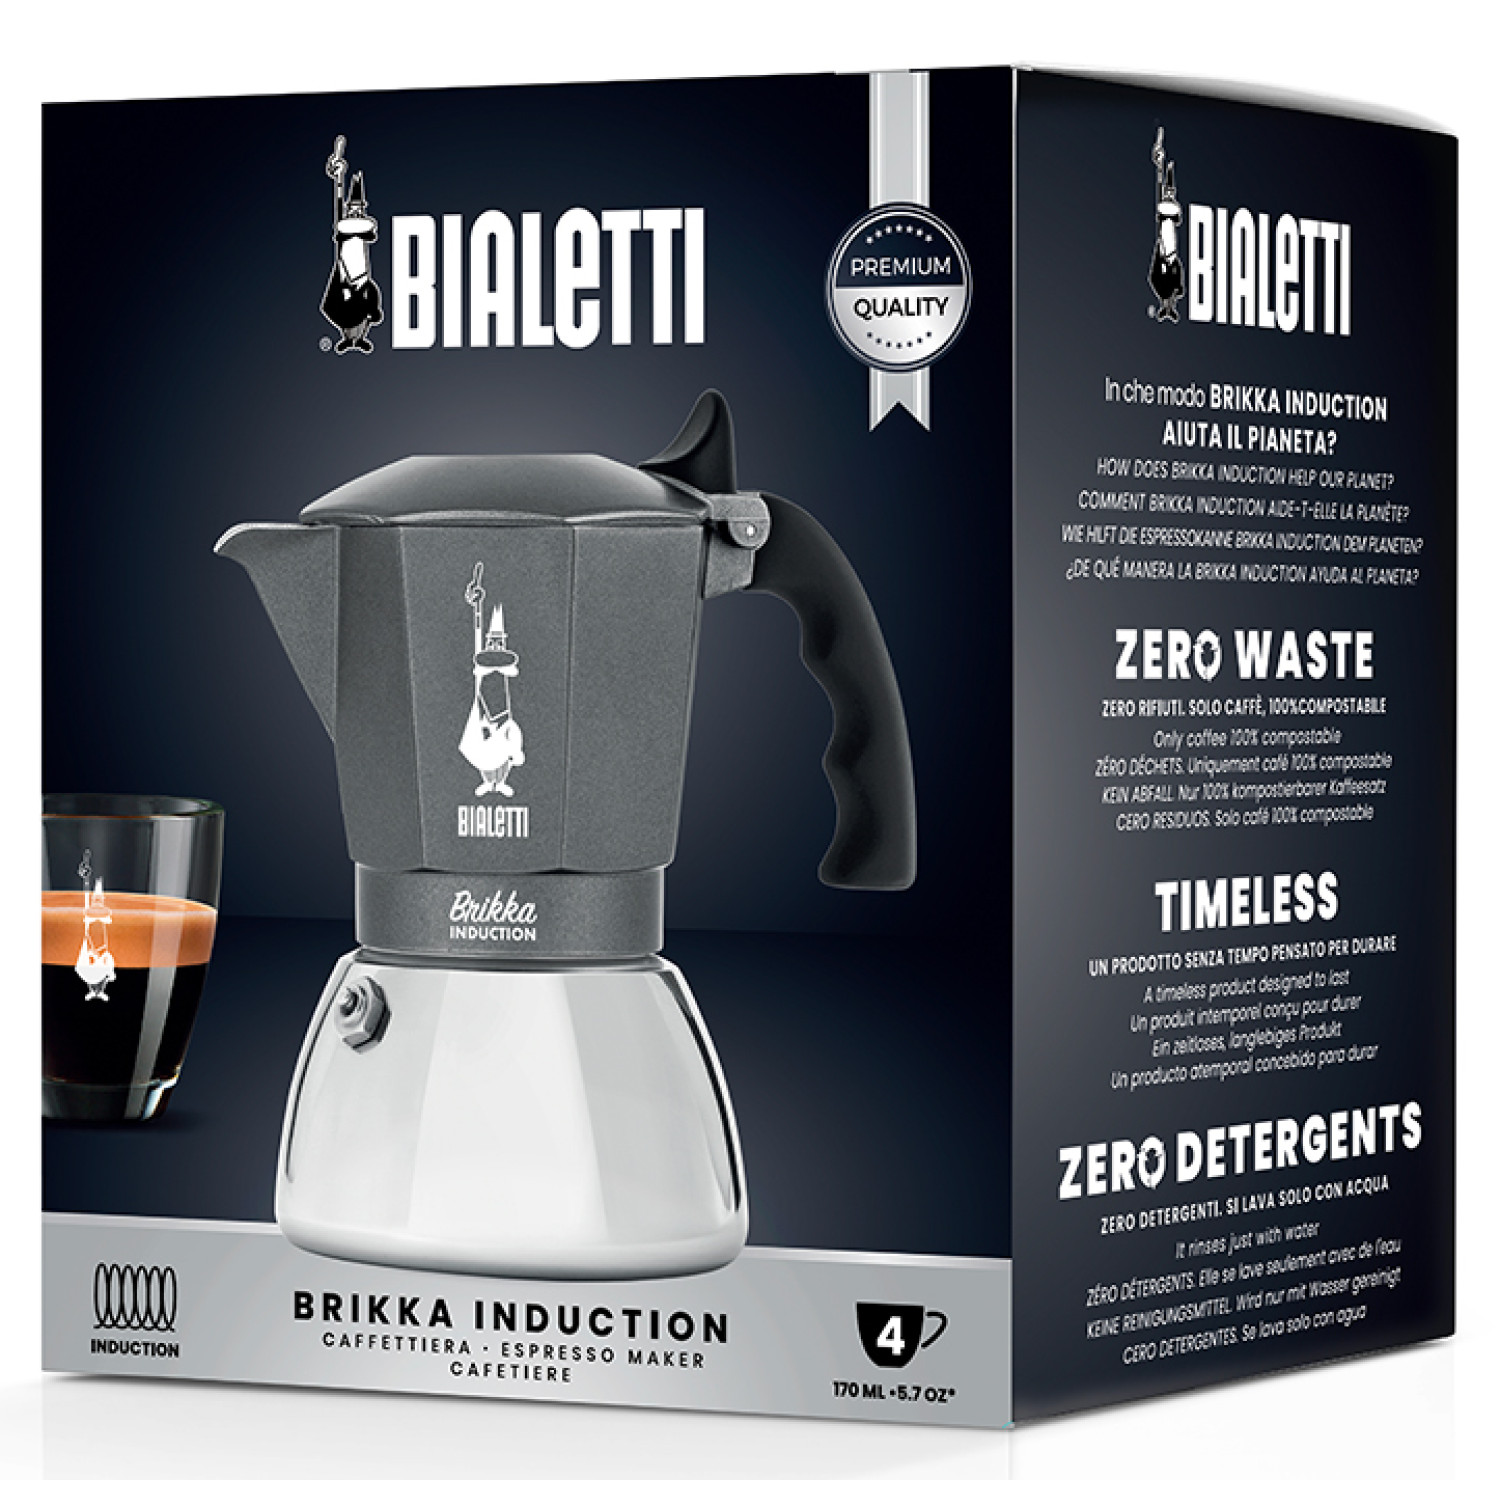 Espressokocher für Brikka BIALETTI 4 Tassen Induktion Grau